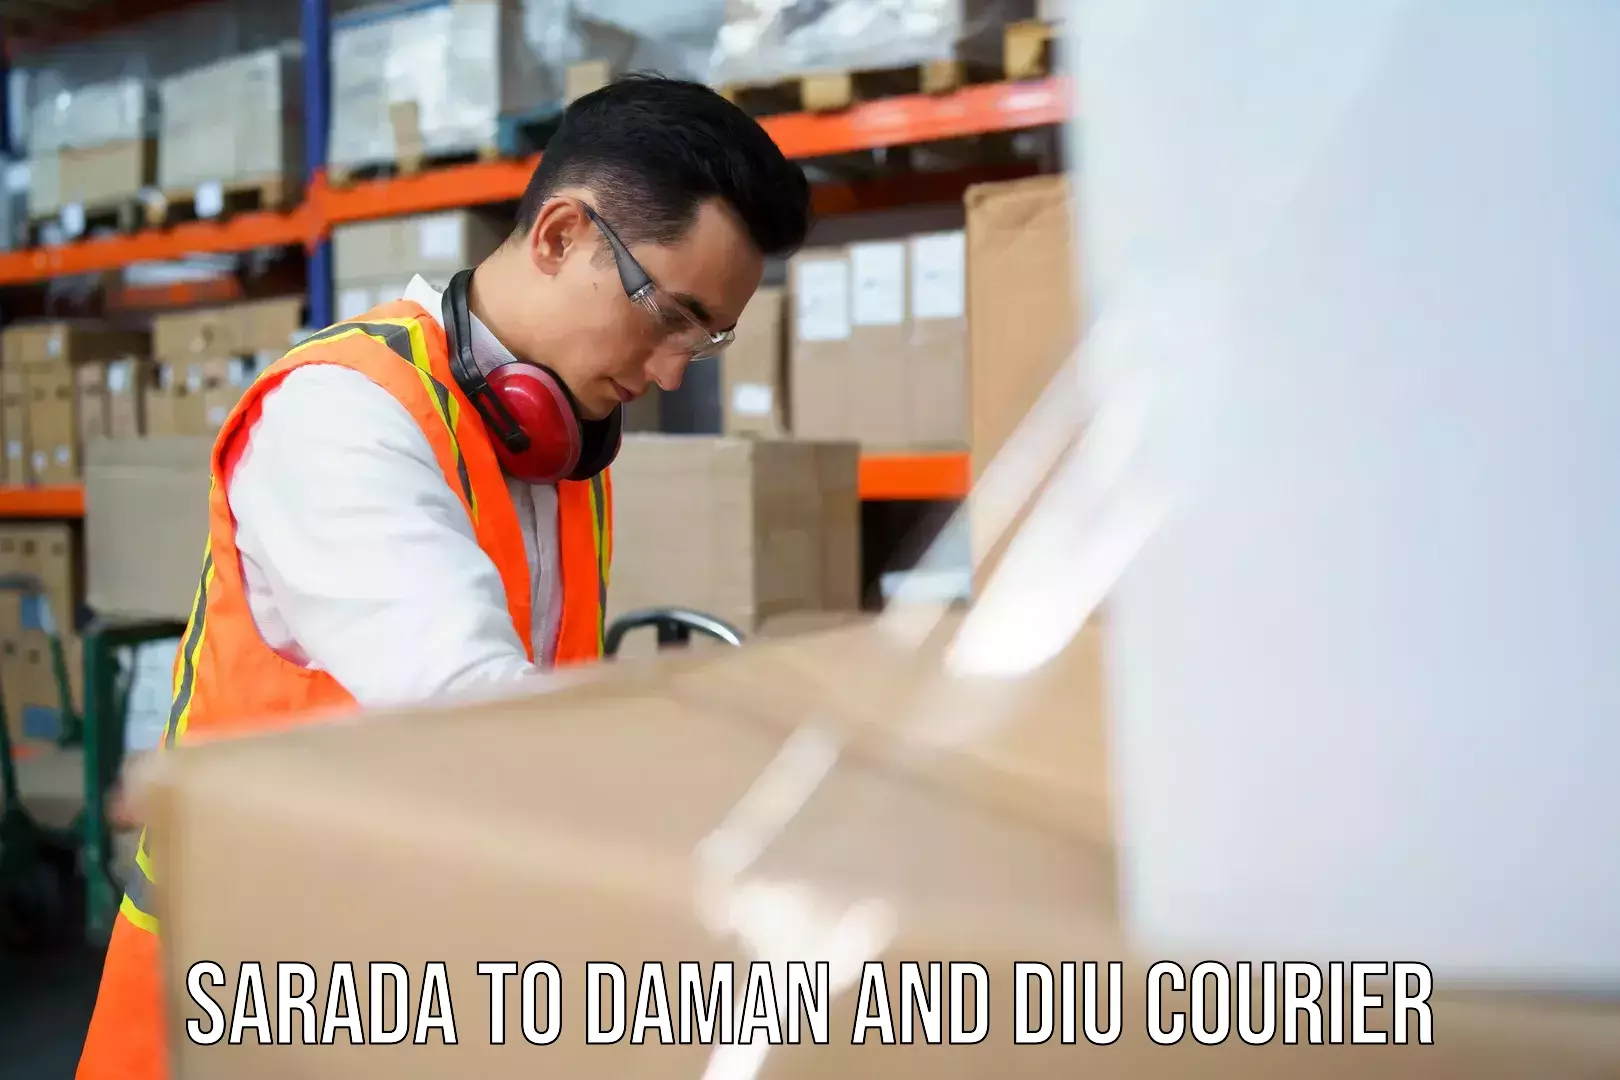 Global shipping solutions Sarada to Daman and Diu